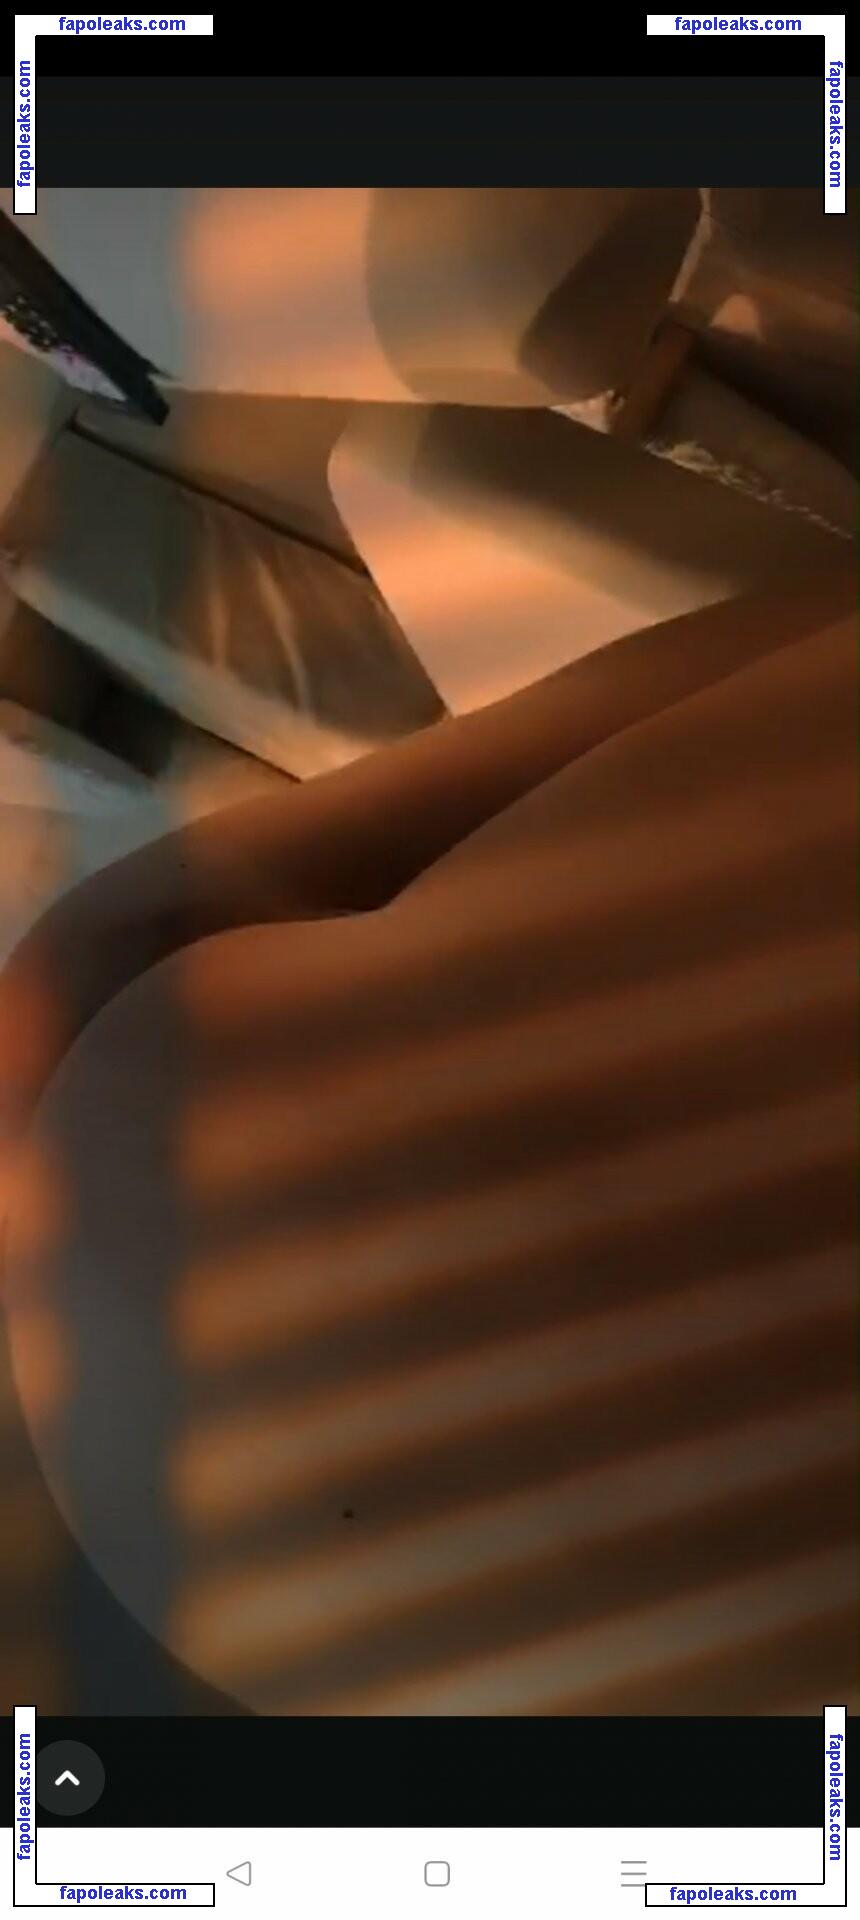 Jill Leslie Vanessa Cavnor / Jayjay / jillcavnor / jilllvc nude photo #0023 from OnlyFans